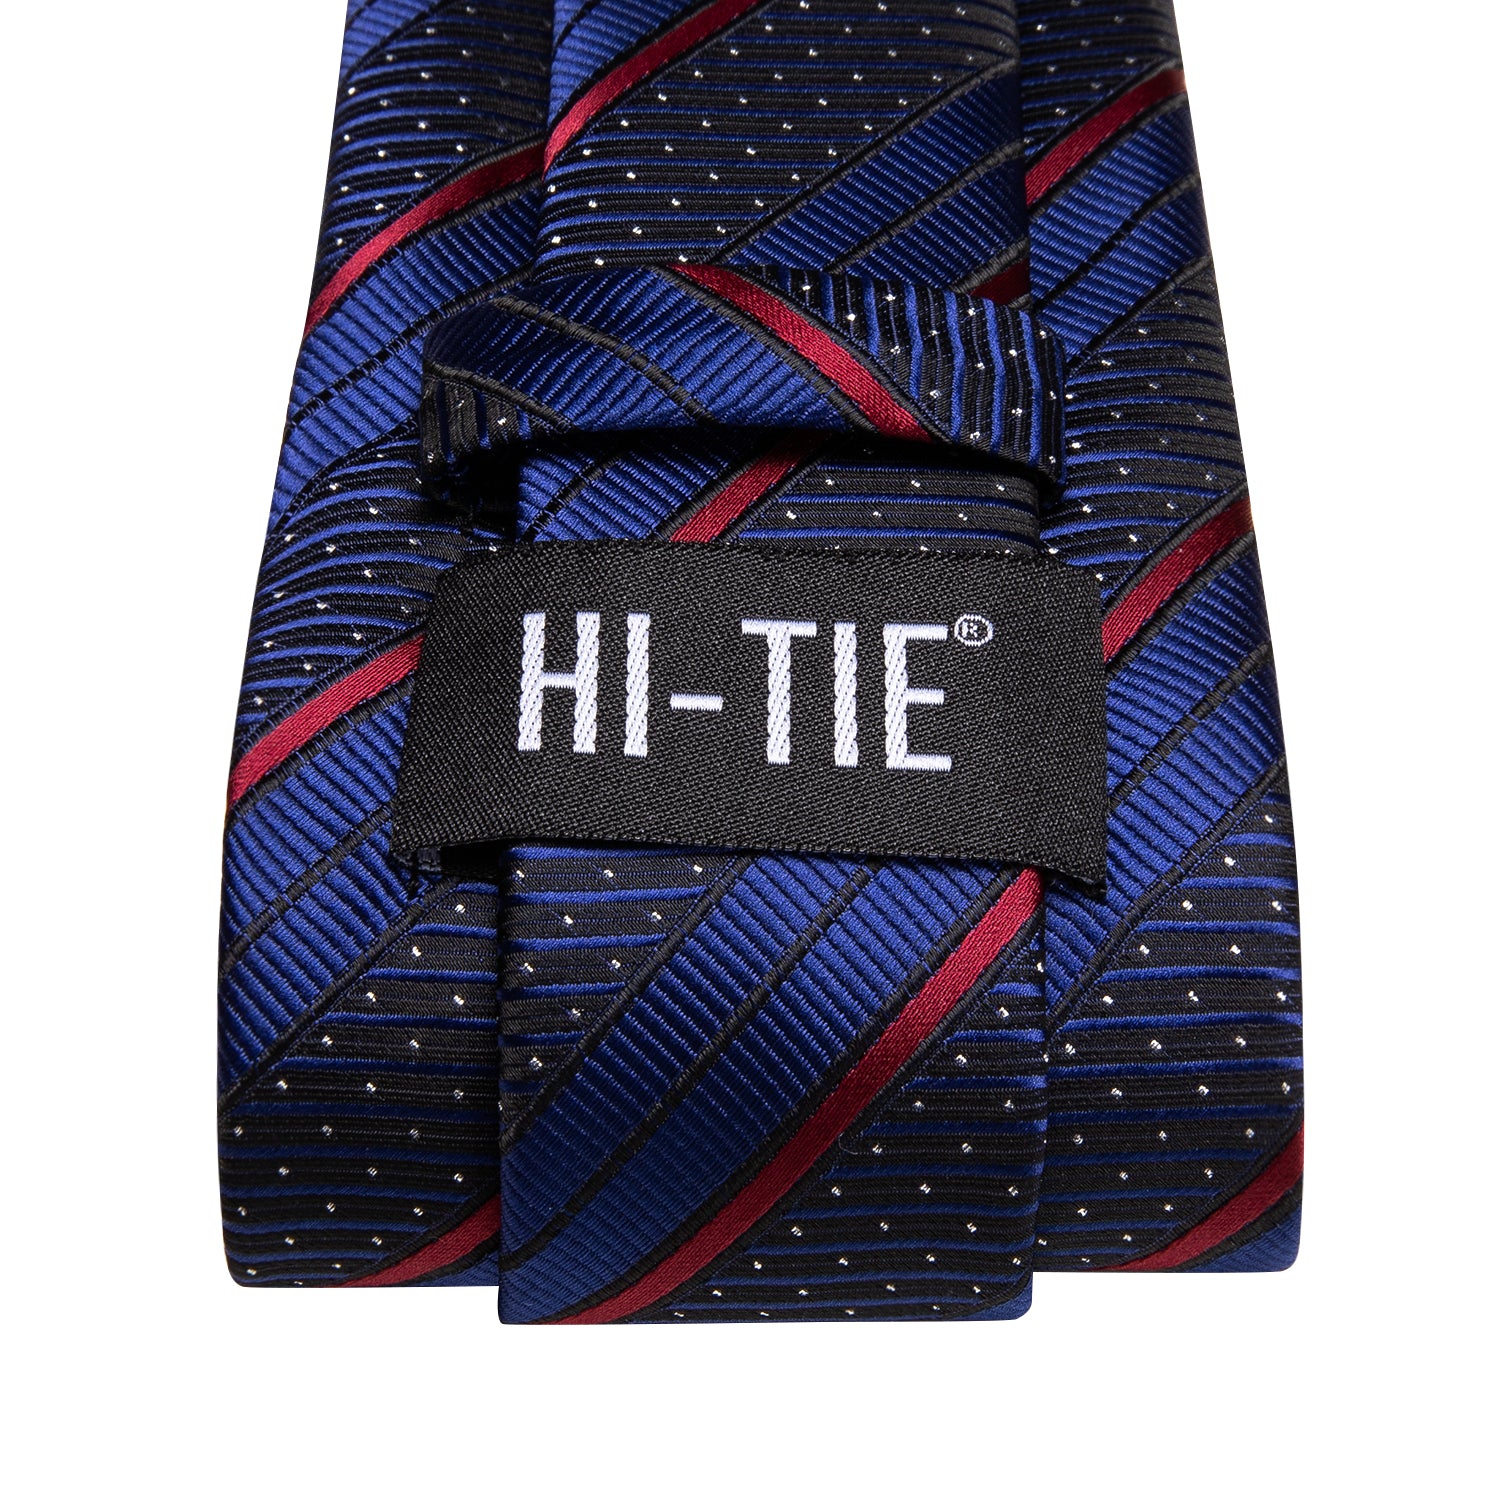 Blue Red Strip with White Dot Necktie Pocket Square Cufflinks Set